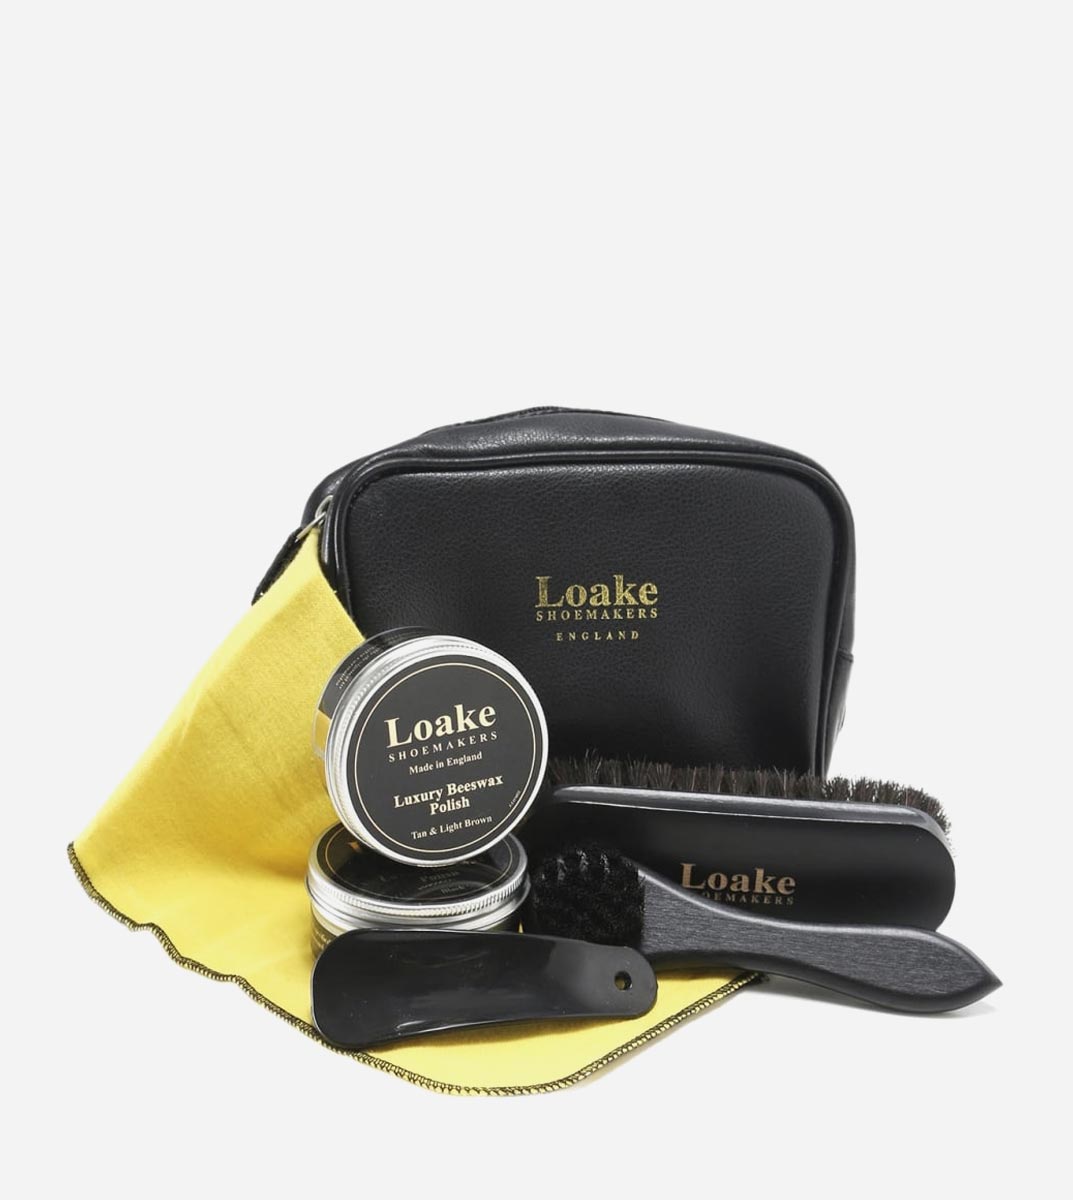 loake shoe care kit